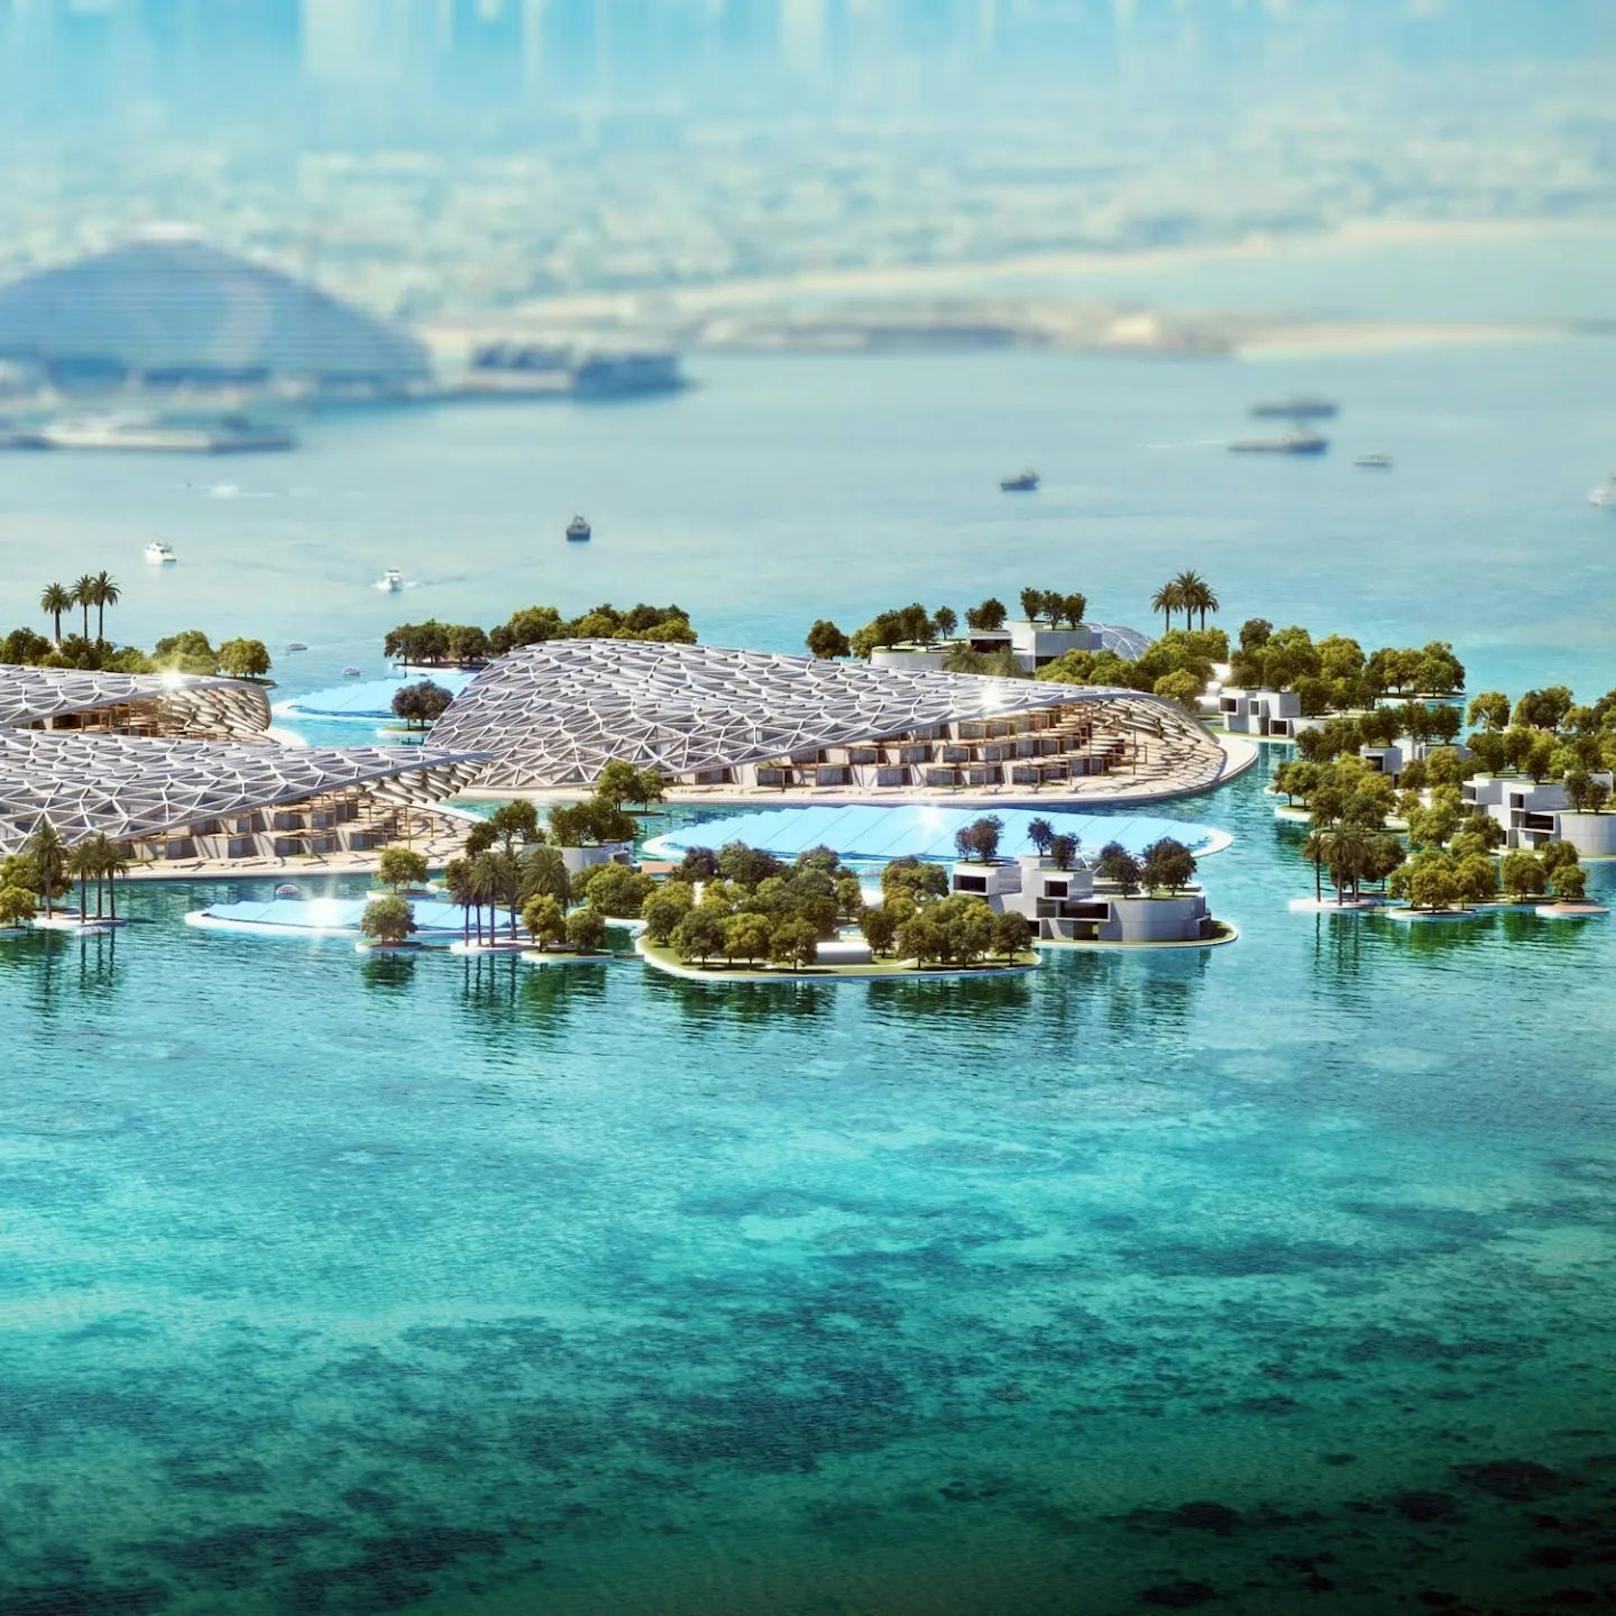 Dubai Reefs: Jetzt kommt das weltgrößte künstliche Riff